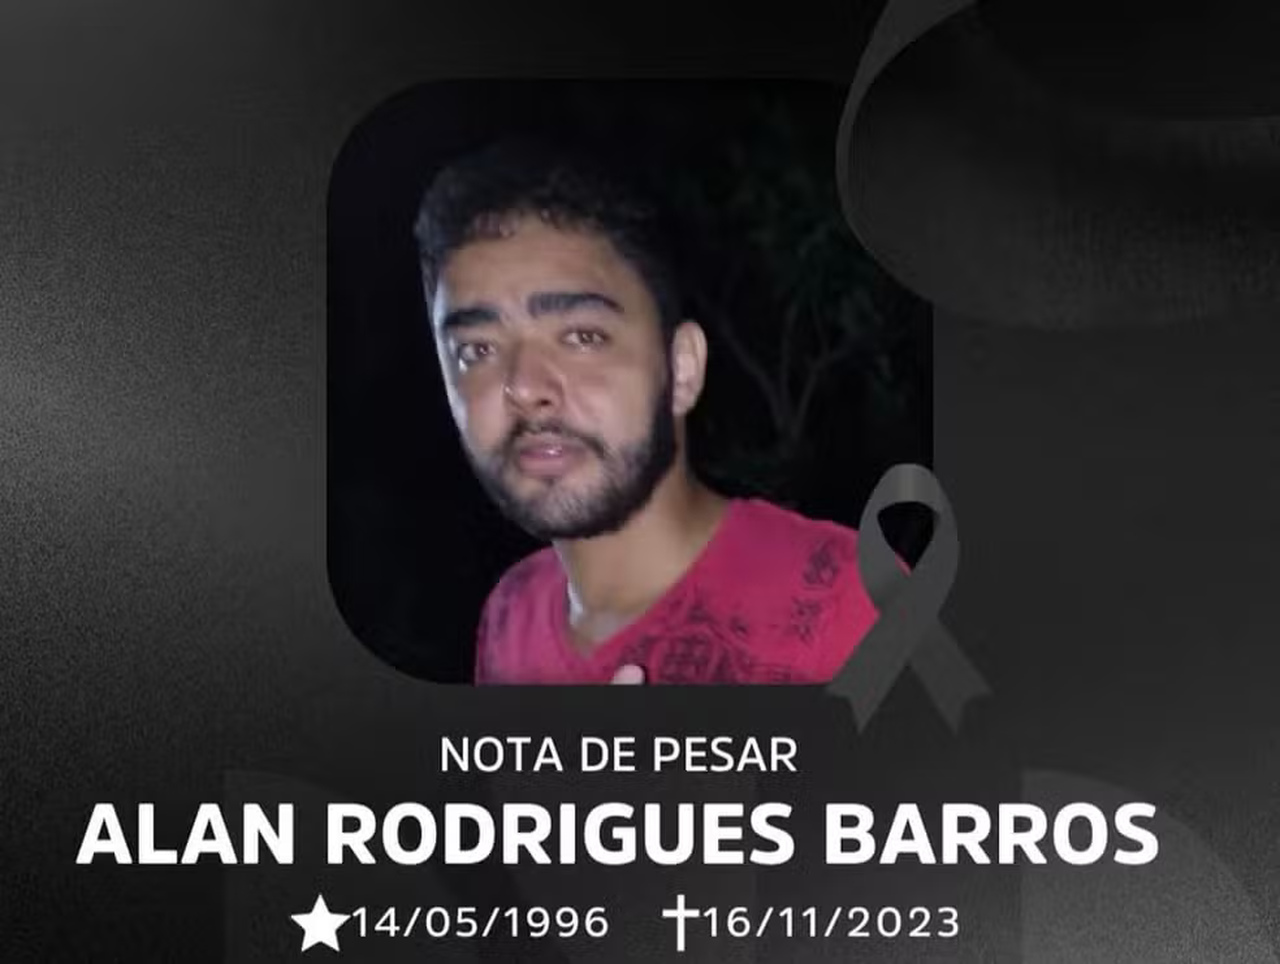 Emboscada para matar homem de 27 anos, em Miracema do TO, teria sido planejada pela namorada da vítima e mais três pessoas; suspeitos foram presos